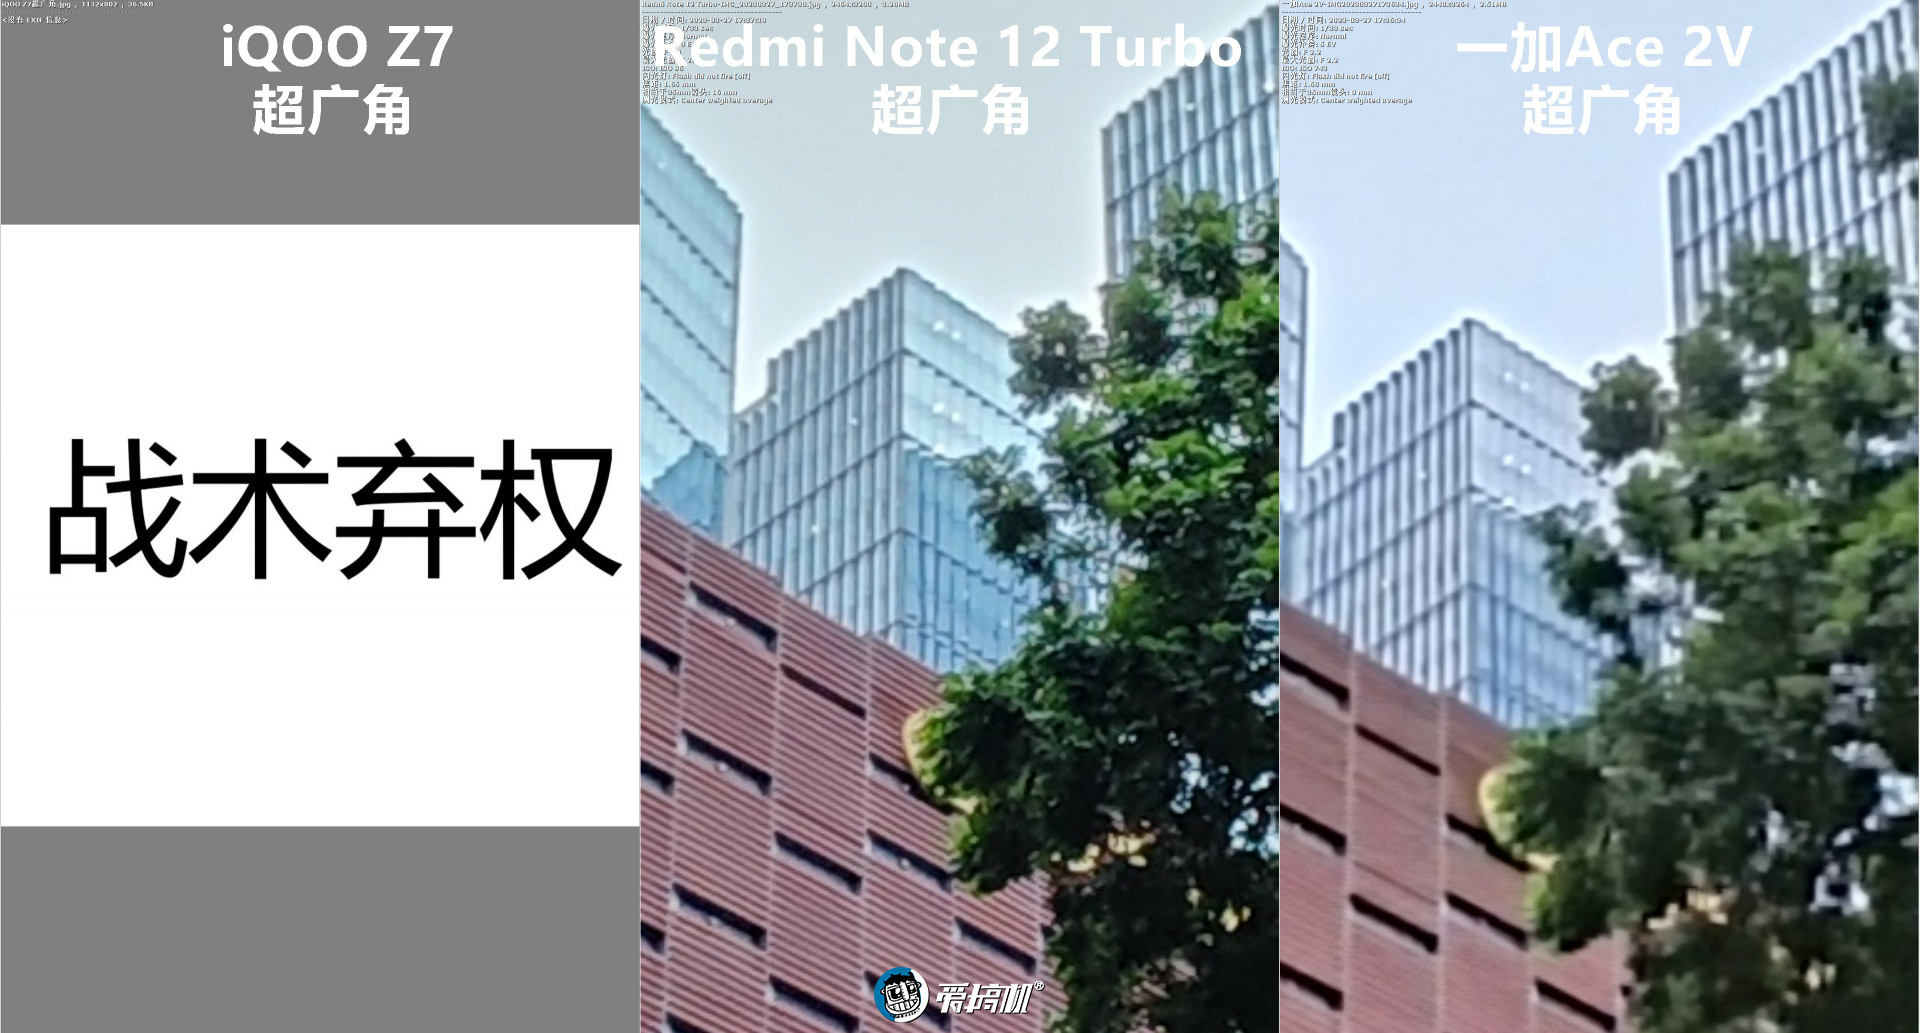 无情的焊门机器，Redmi Note 12 Turbo评测：1999元起的二代骁龙7+